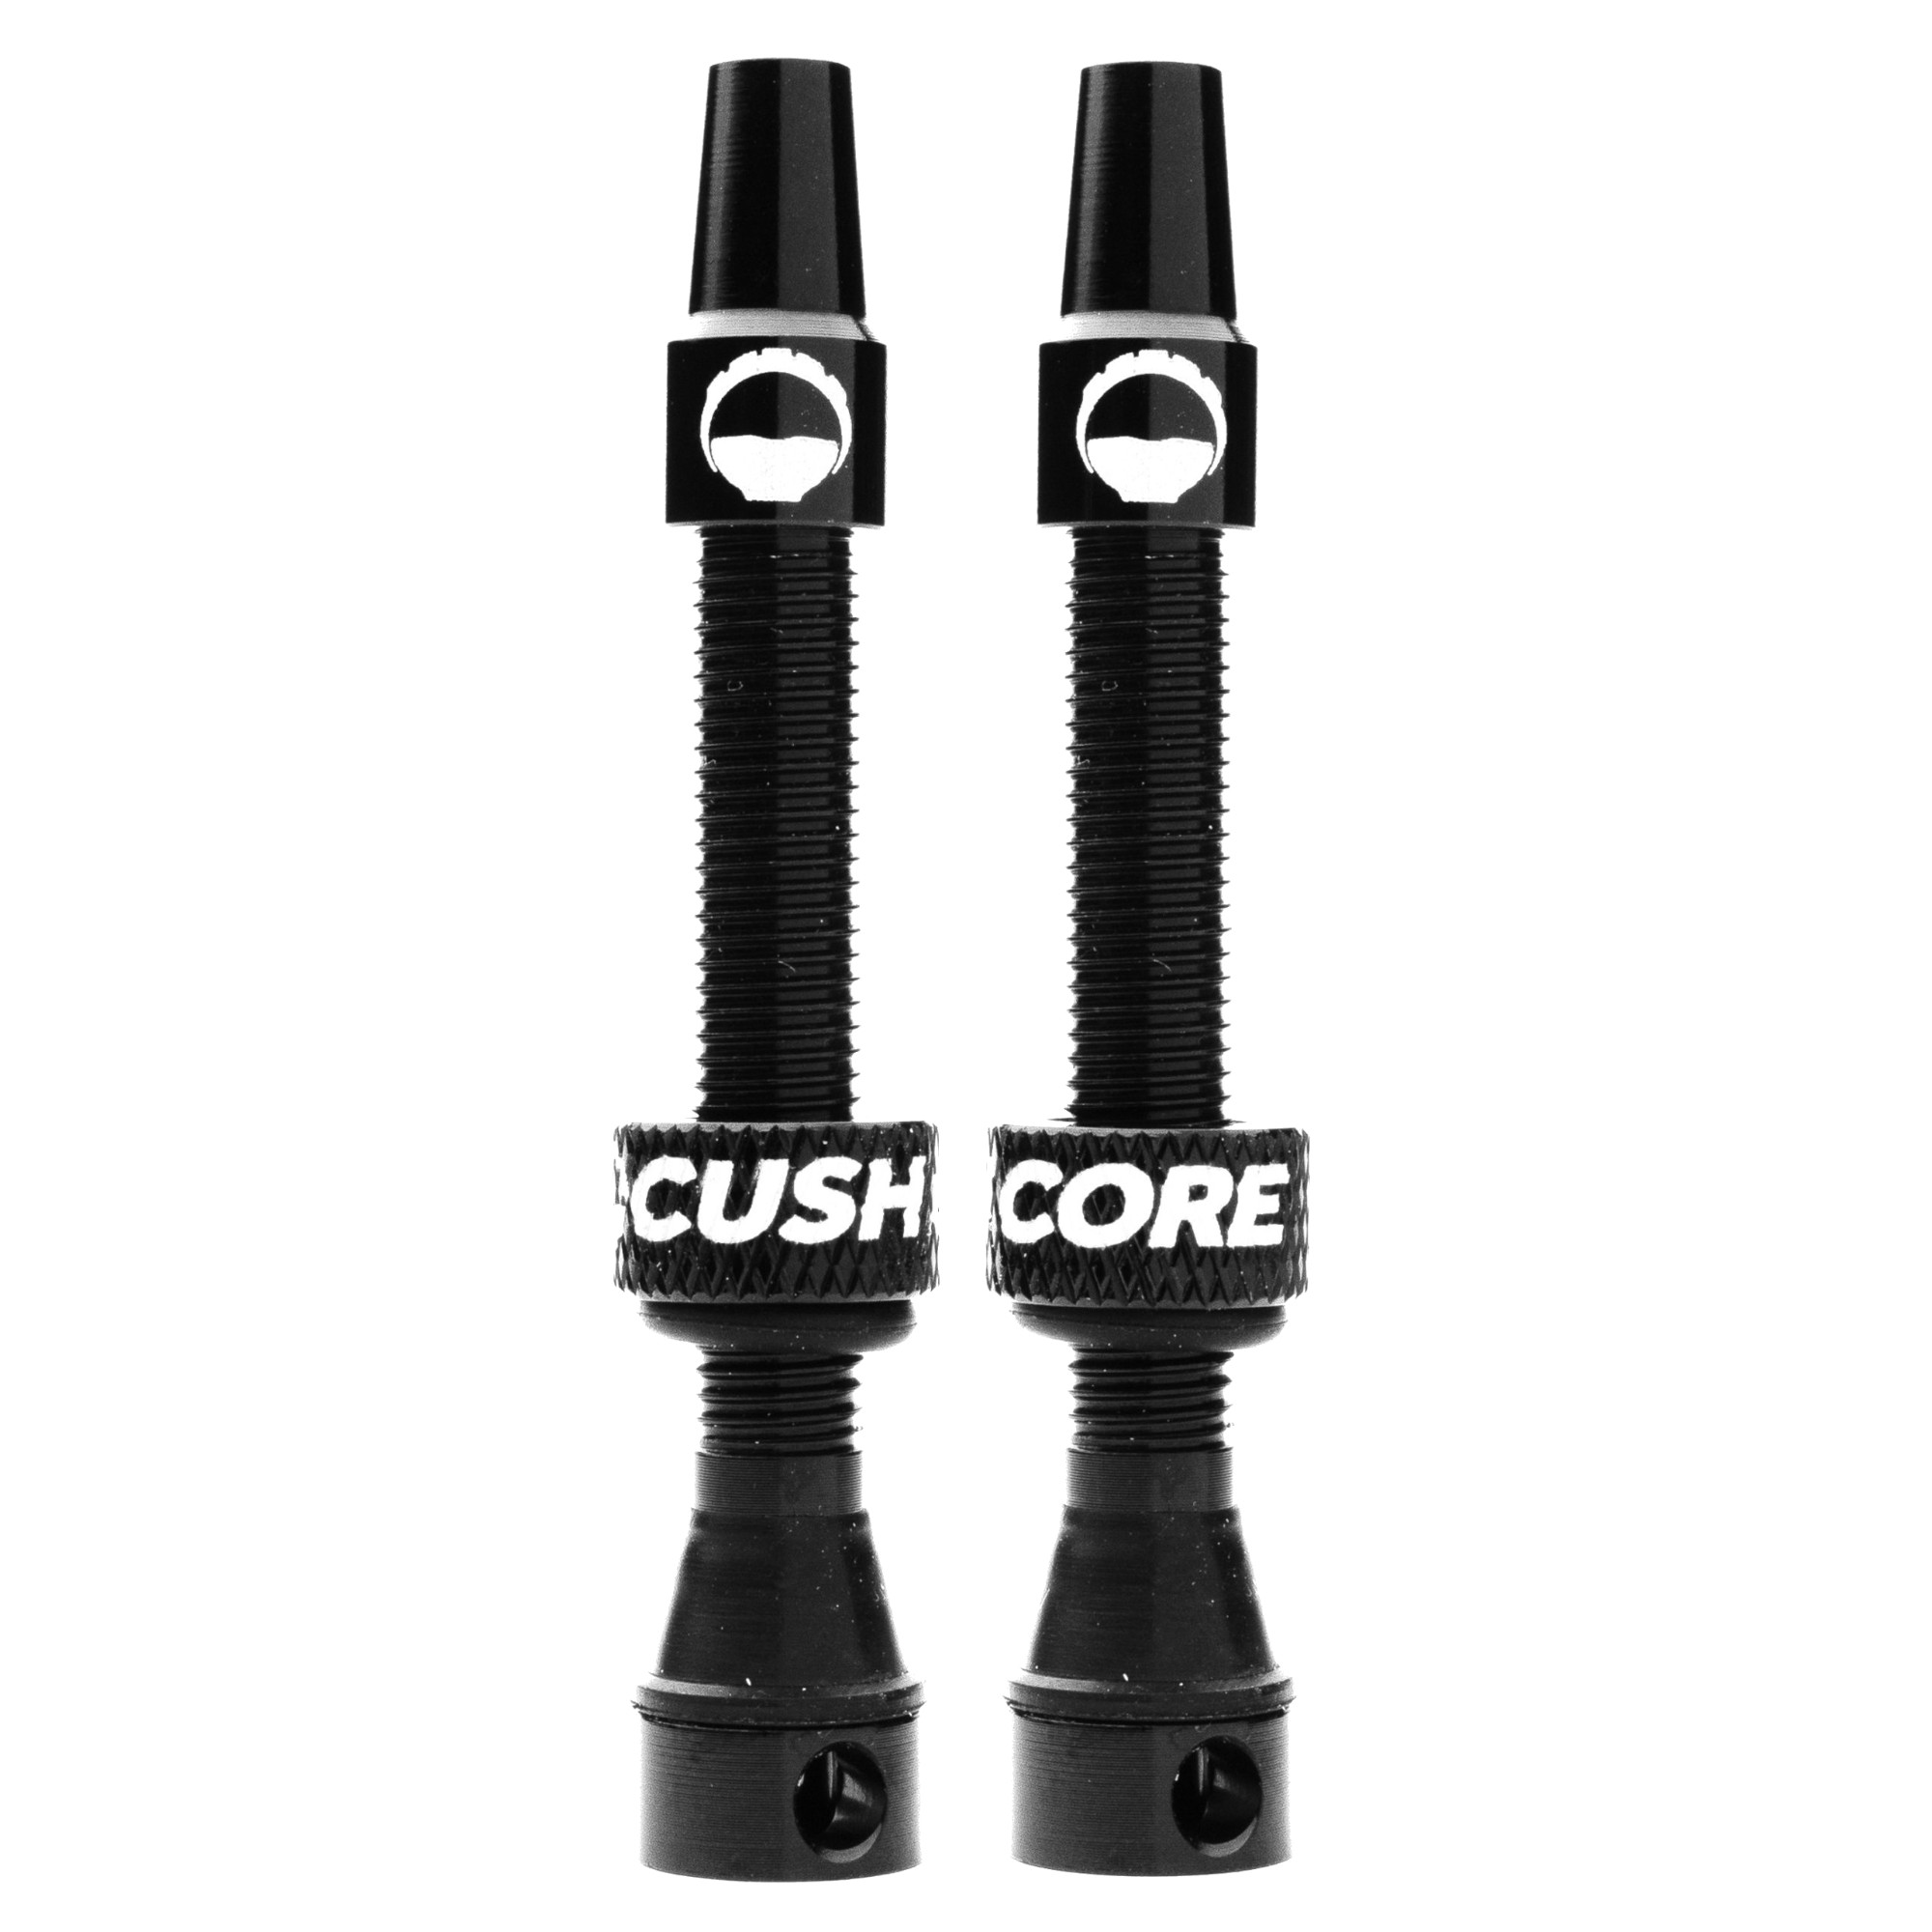 Productfoto van CushCore Tubeless Ventielen Set - 44mm (Paar) - zwart